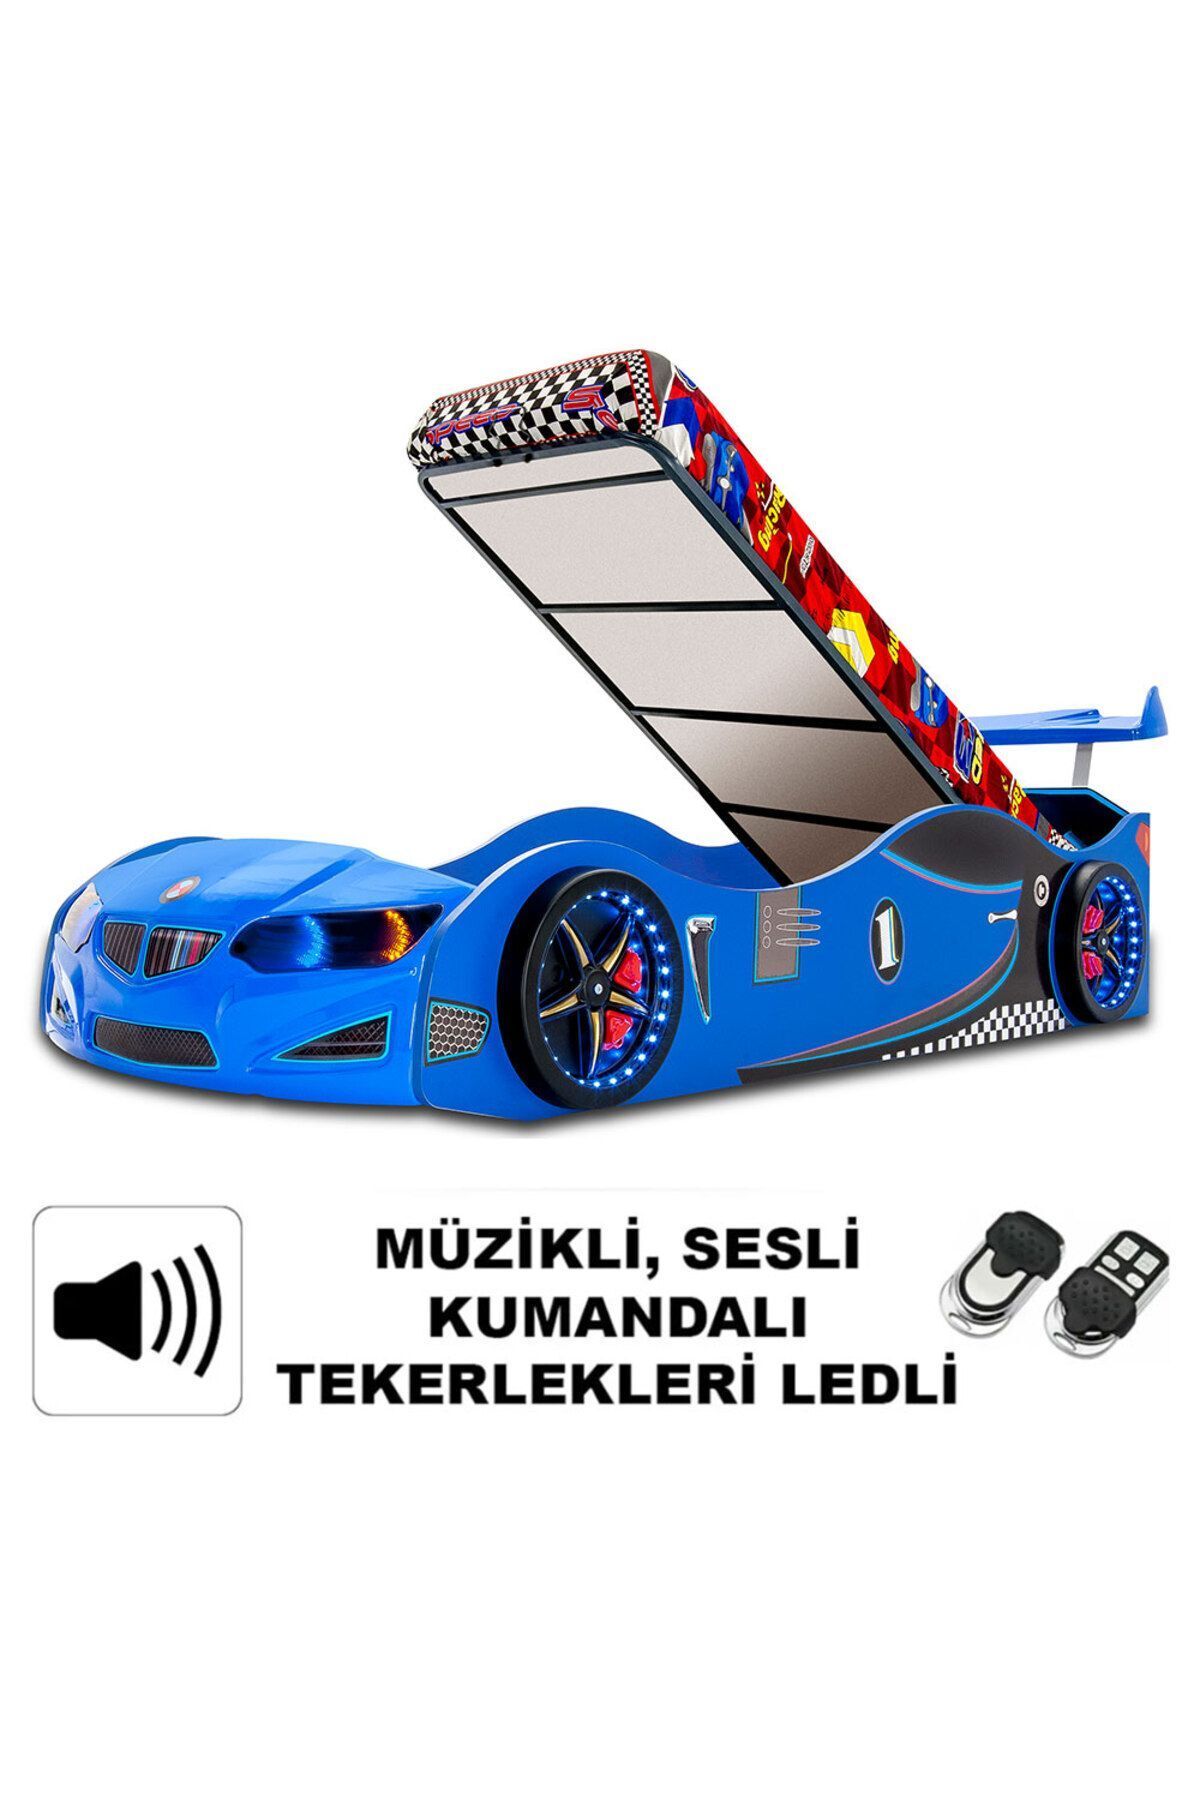 inegoldeneve GT1 - BAZALI Arabalı Yatak Araba Karyola, Araba yatak - Full Ledli, Kumandalı Ve Bazalı